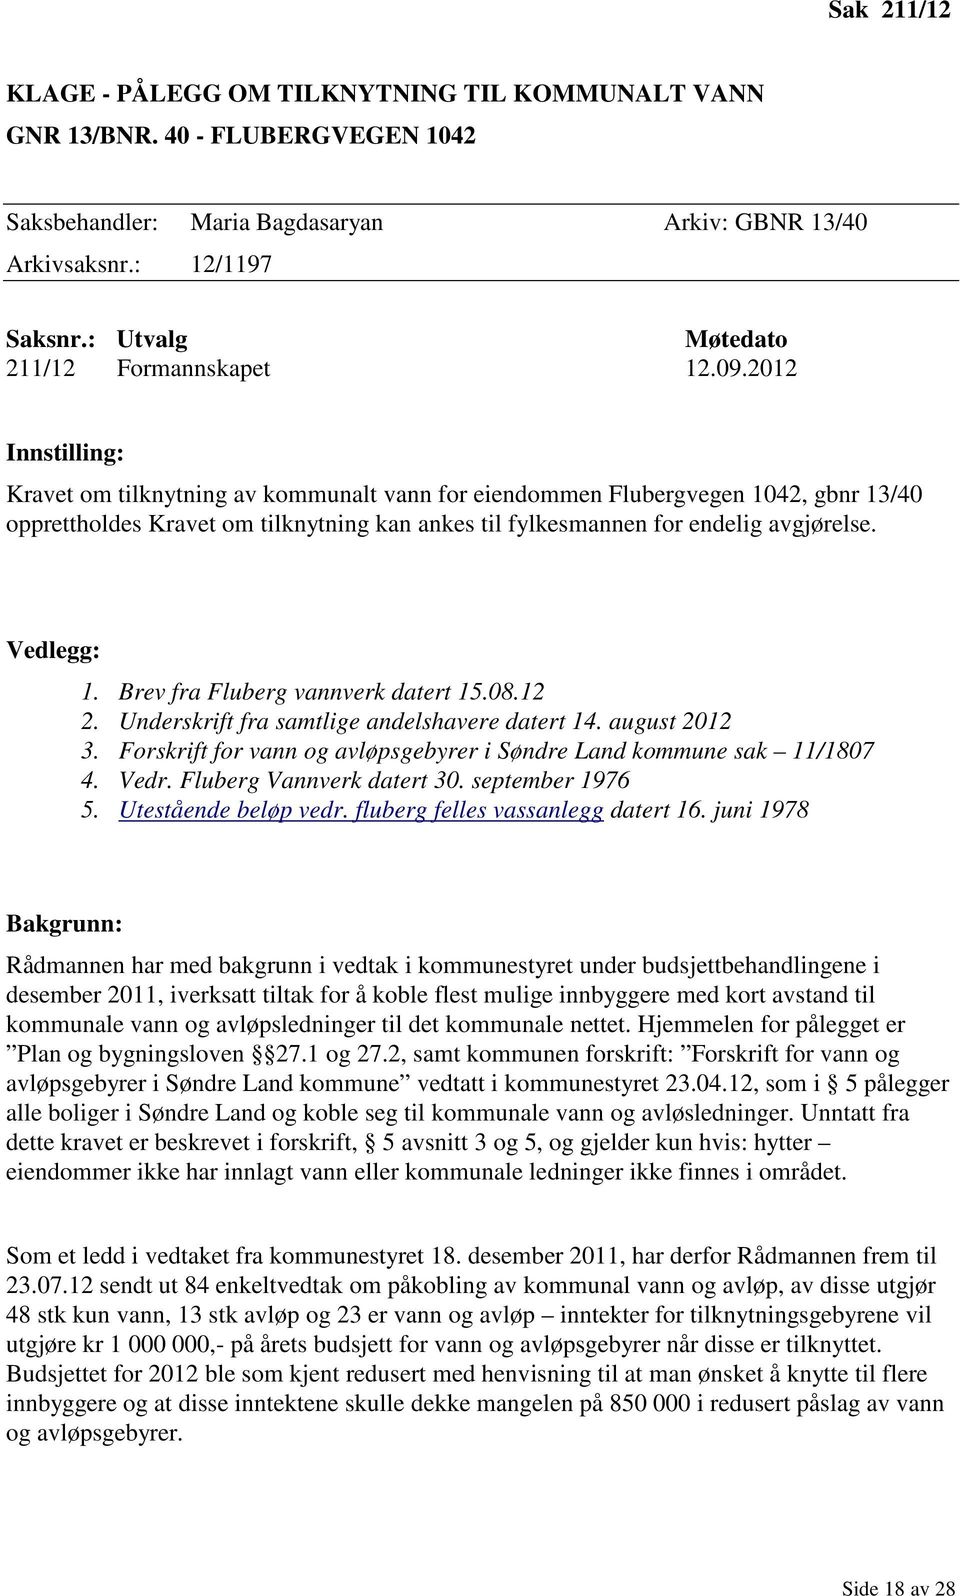 2012 Innstilling: Kravet om tilknytning av kommunalt vann for eiendommen Flubergvegen 1042, gbnr 13/40 opprettholdes Kravet om tilknytning kan ankes til fylkesmannen for endelig avgjørelse.